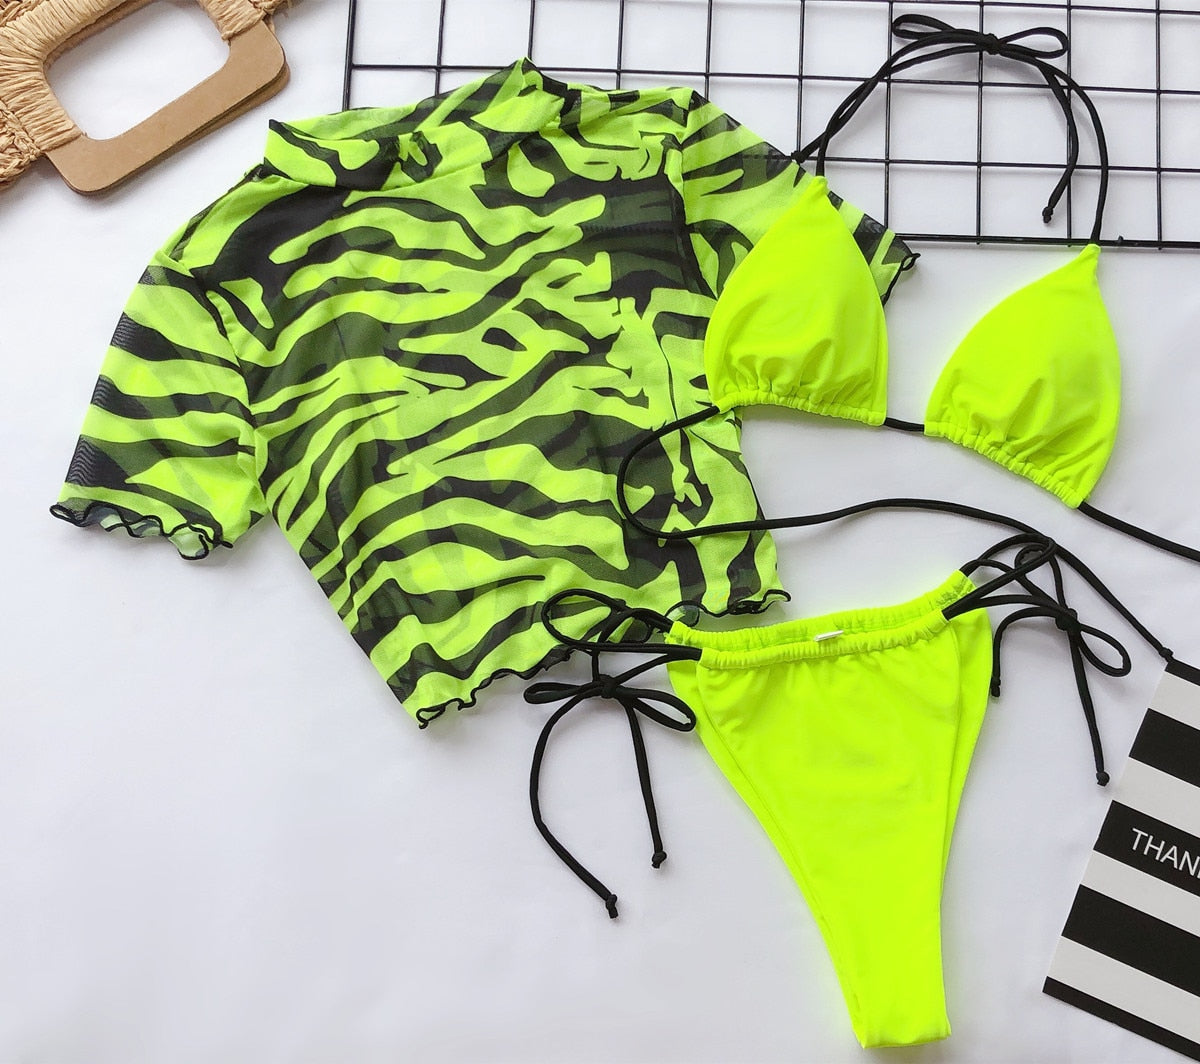 Ornis - Sexy 3 Piece Push-up Padded Brazilian Bikini & Coverup Top Set